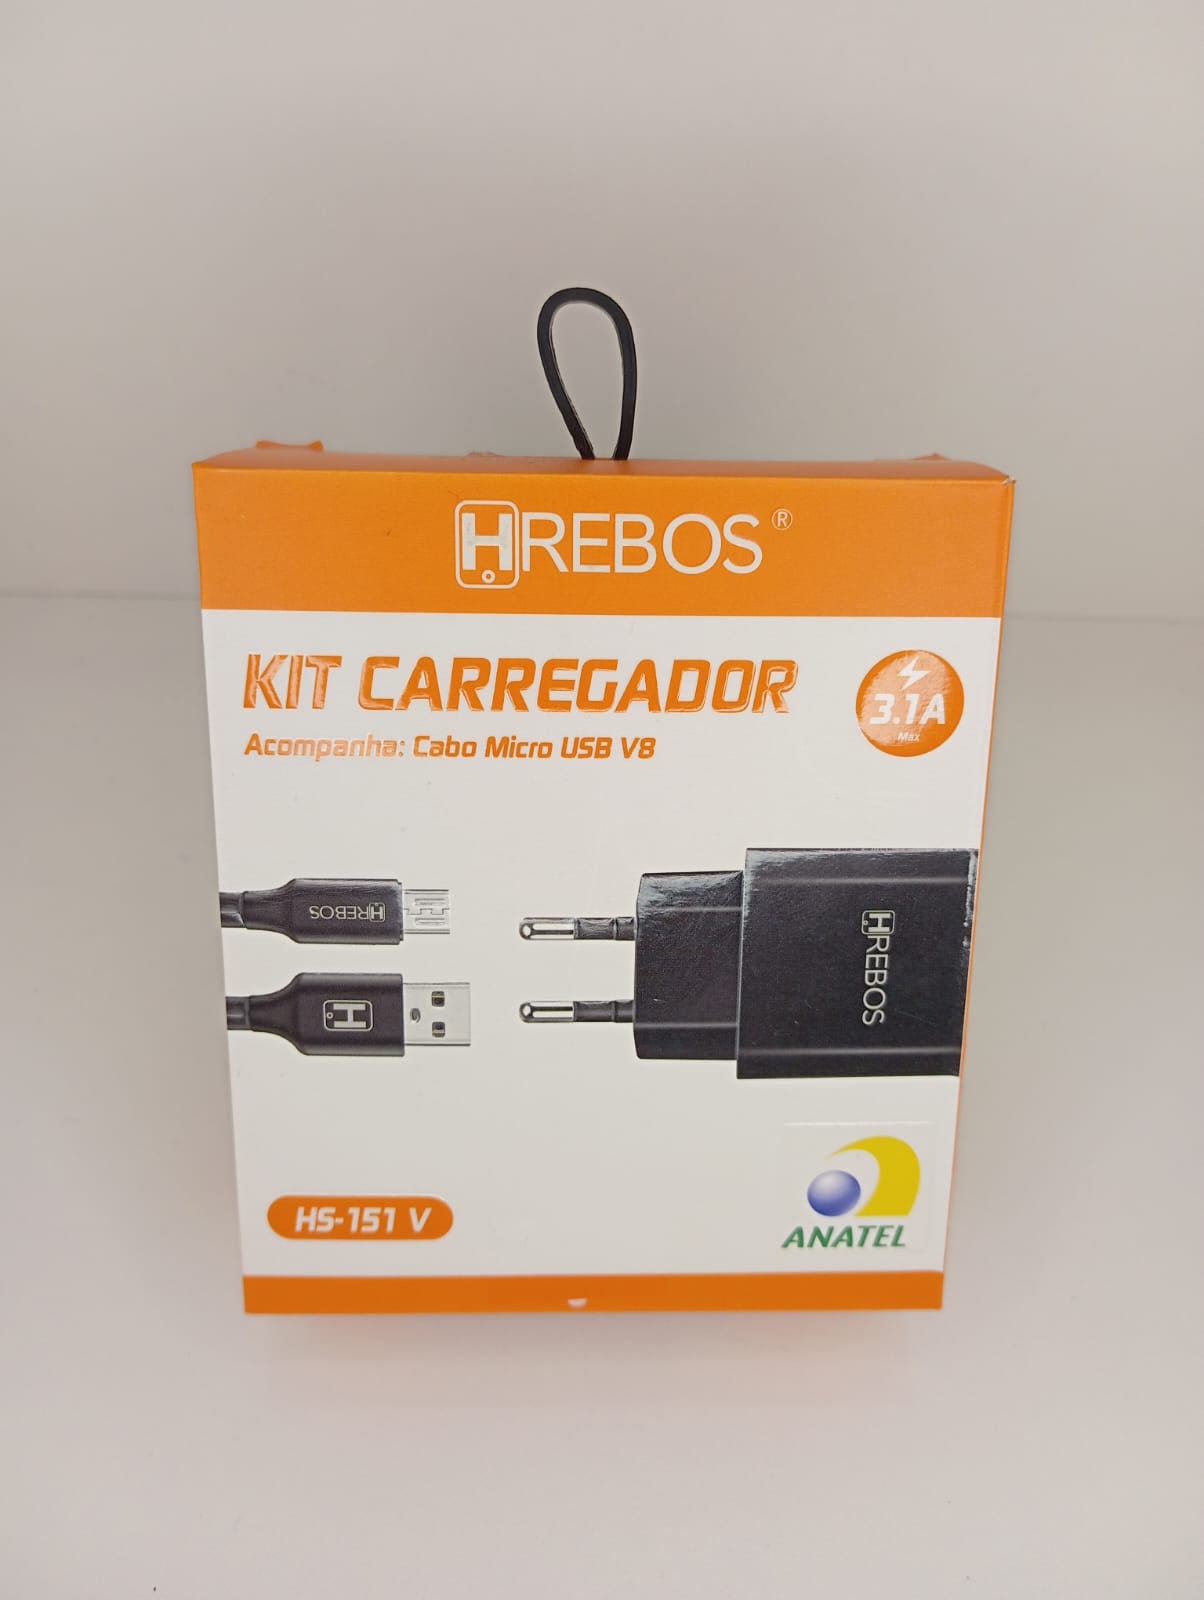 2689-2287-Kit Carregador Hrebos 3.1A Cabo Usb V8 Hs-151V Preto